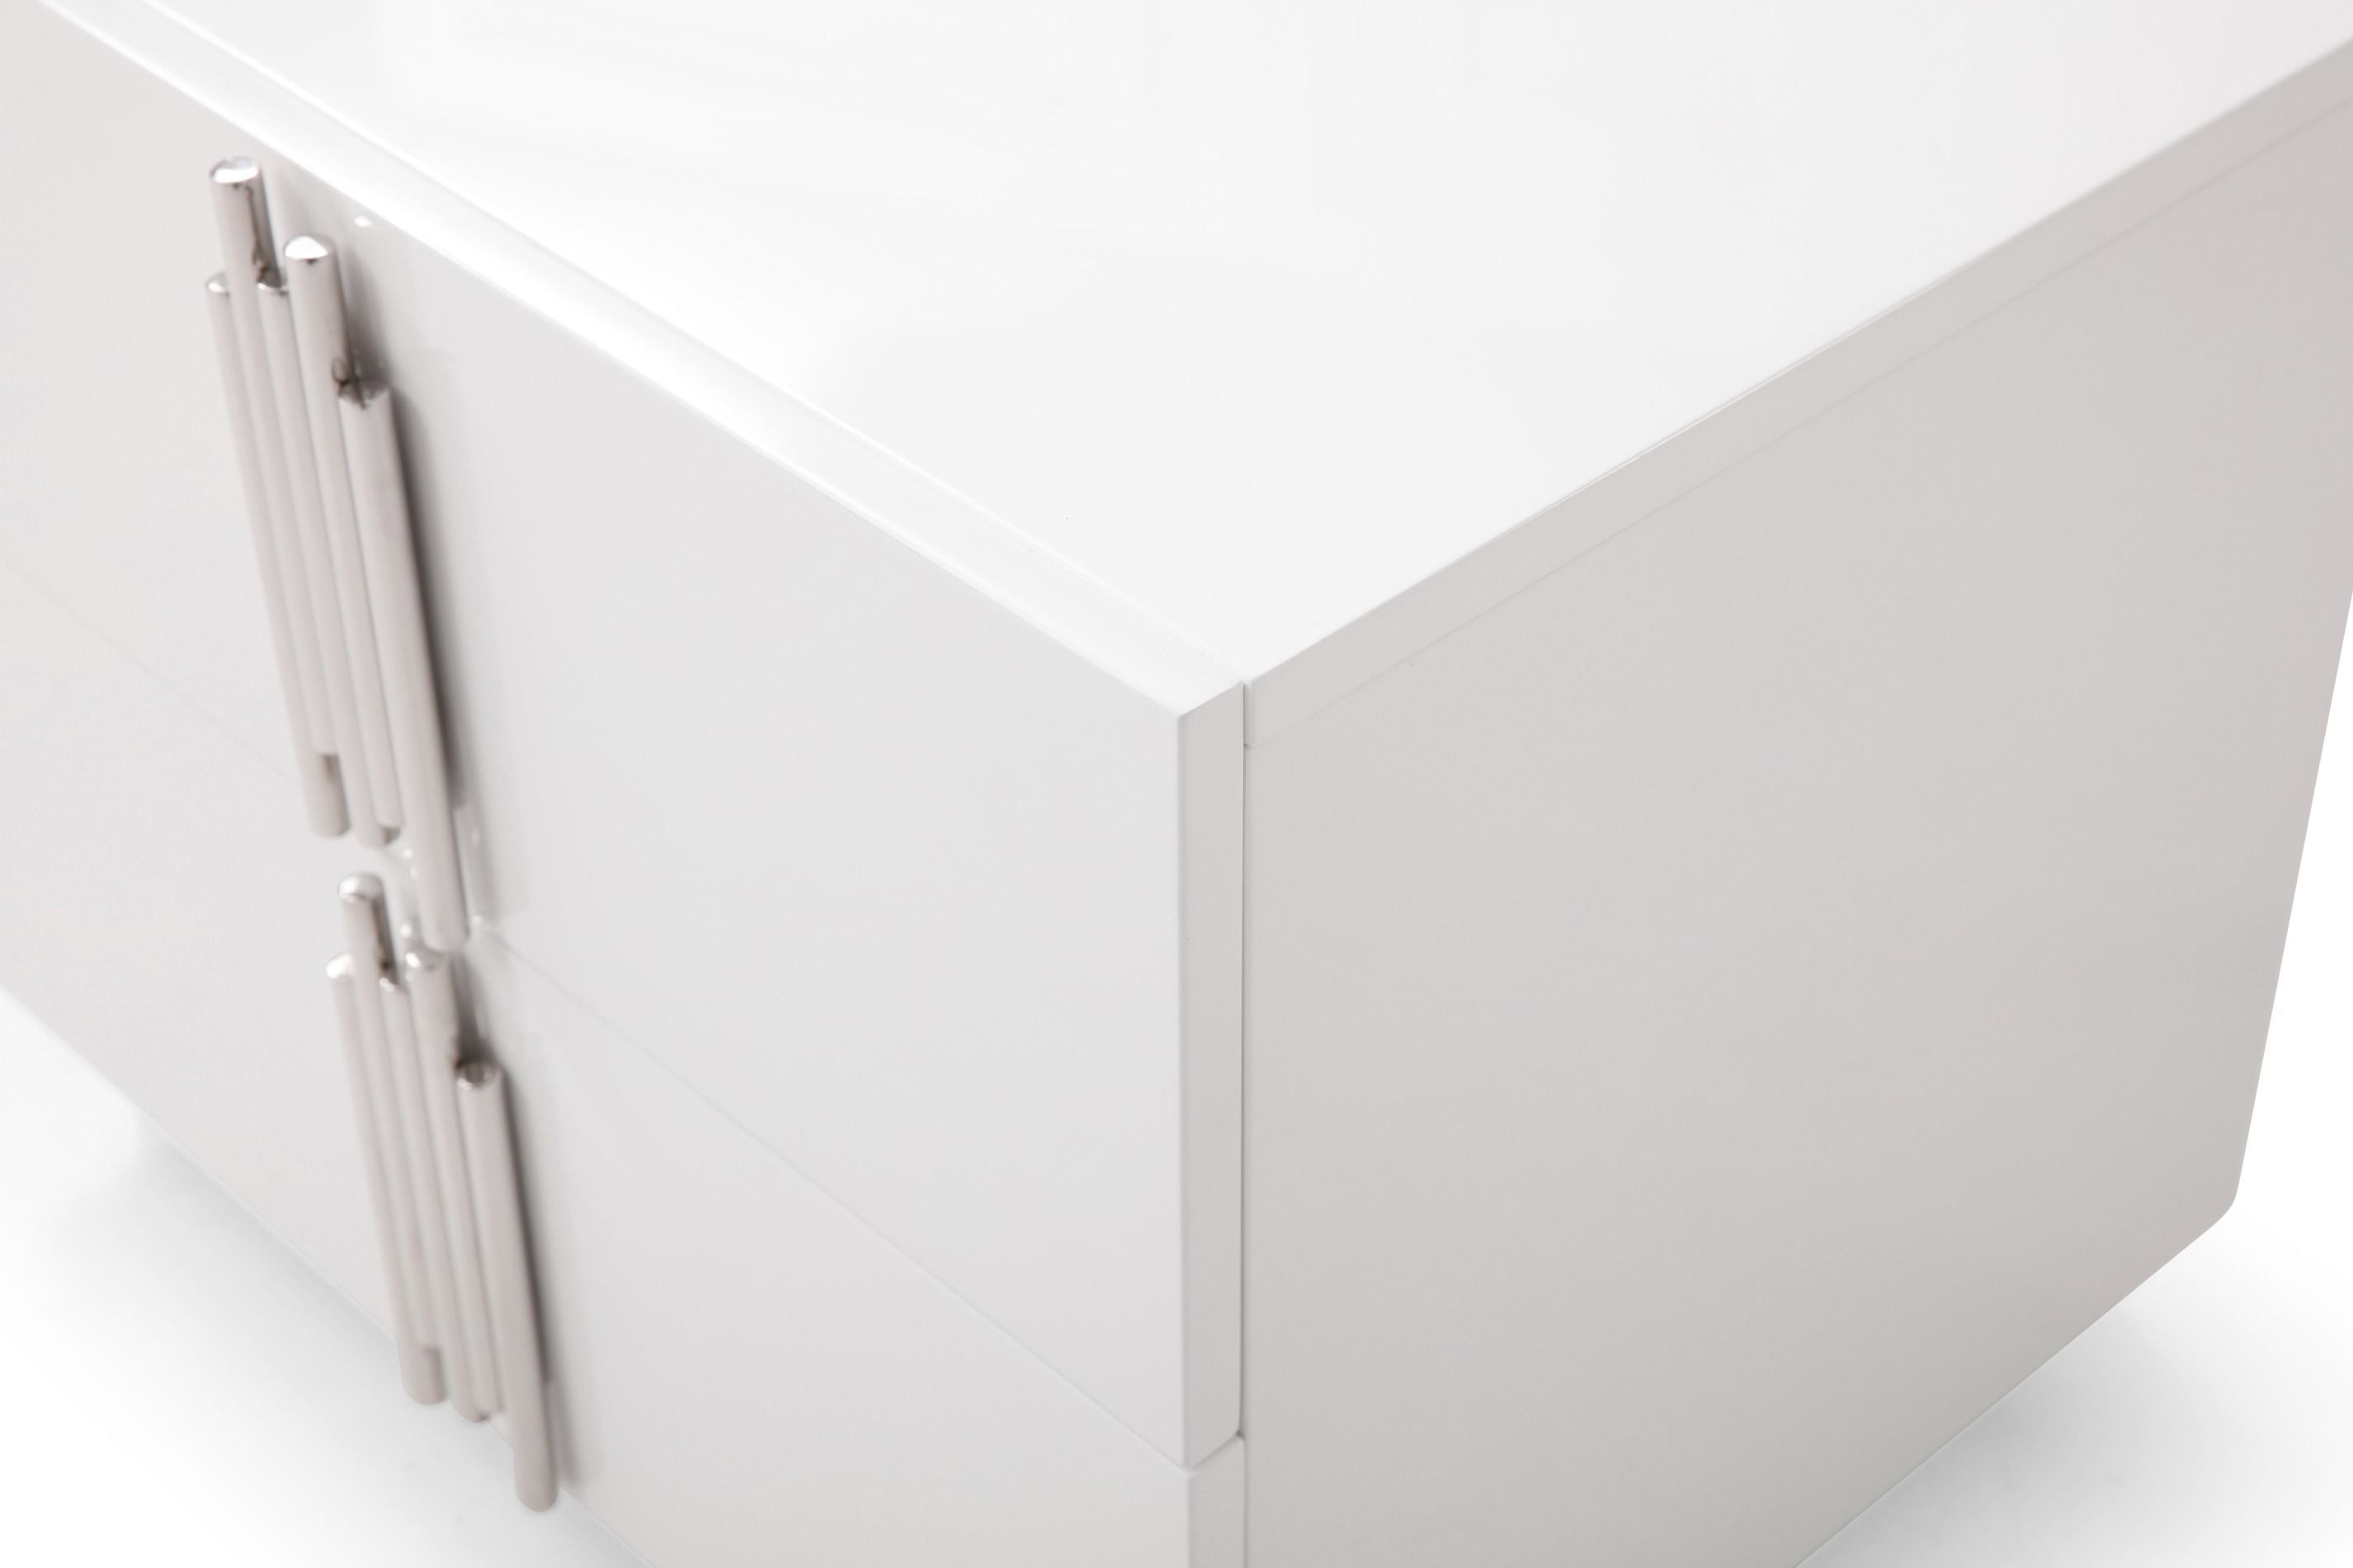 Eastern King Modrest Token - Modern White & Stainless Steel Bedroom Set